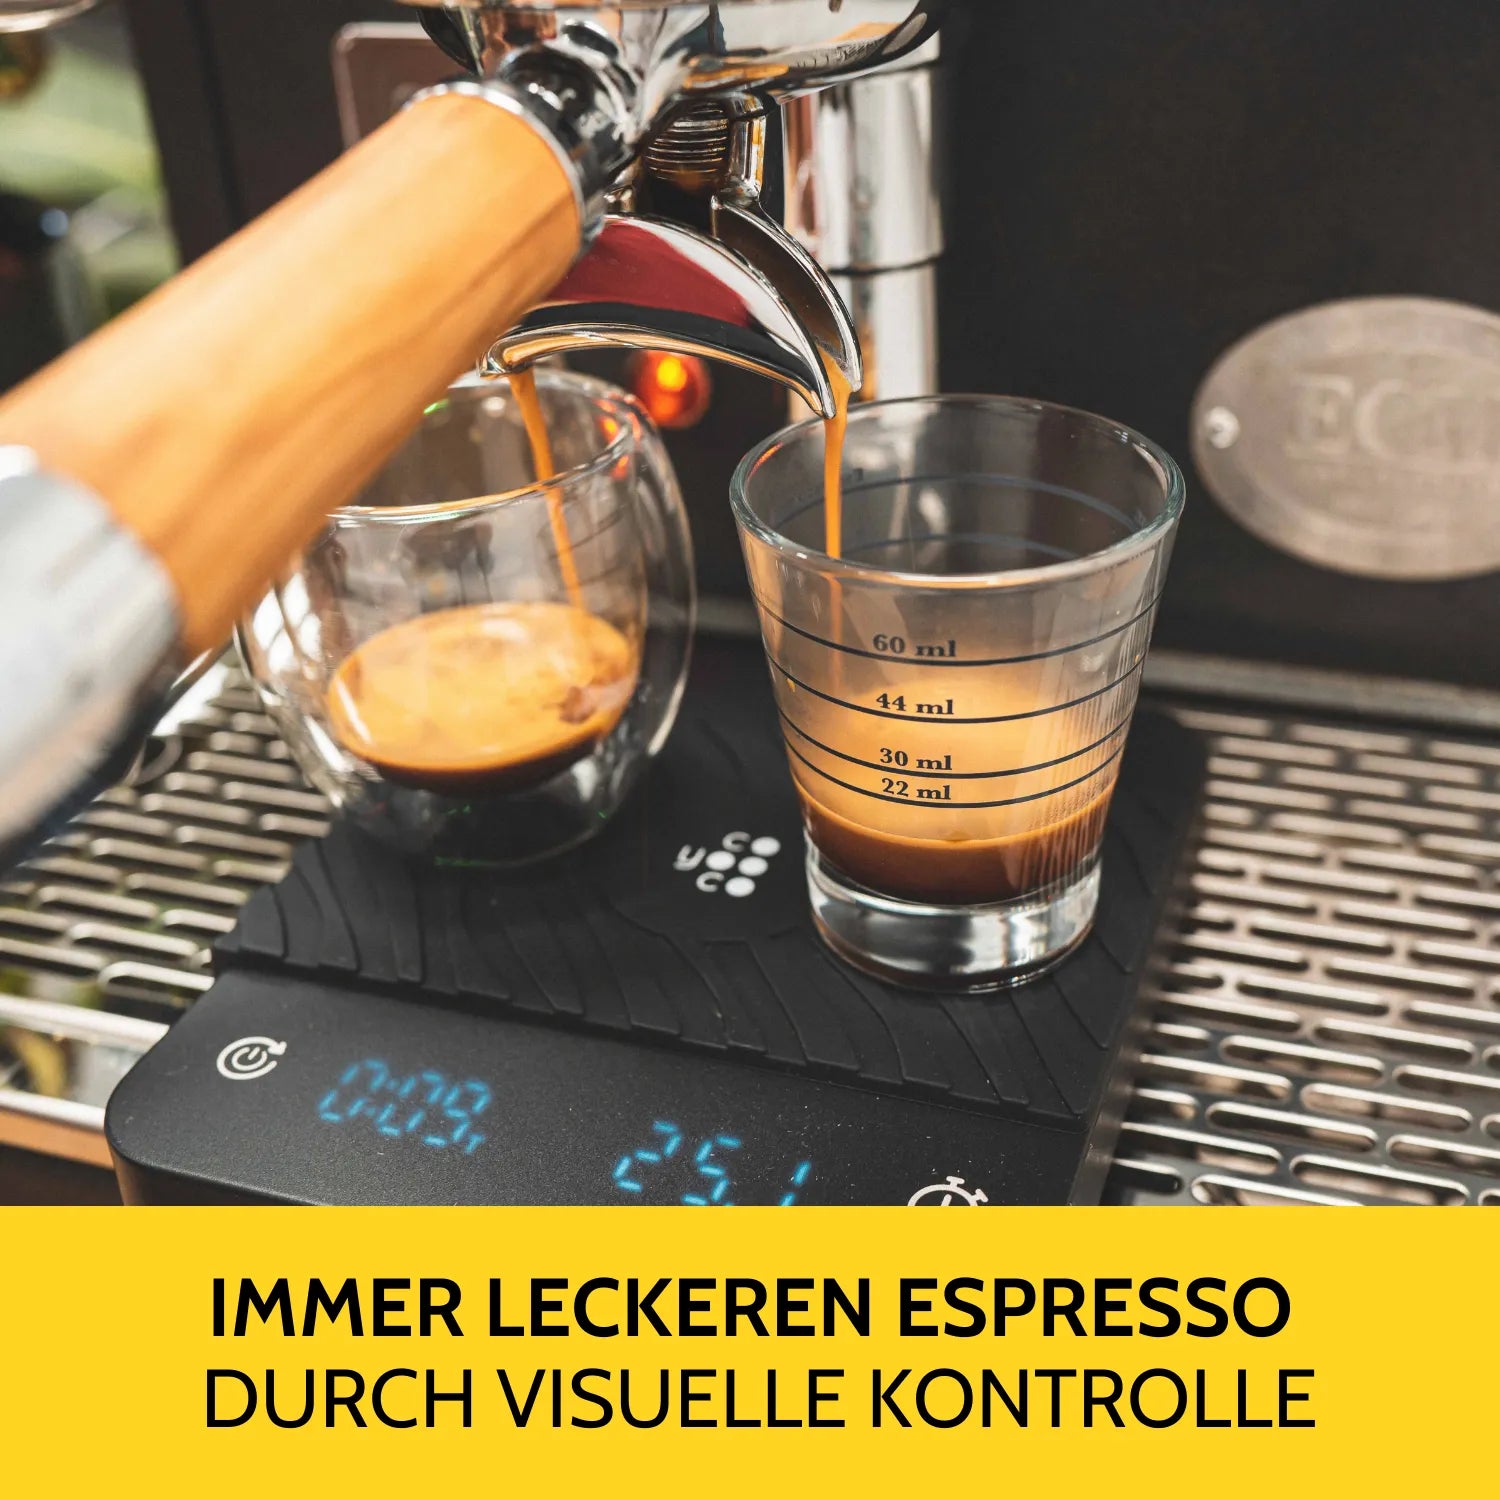 Espresso extrahiert in das Shotglas, welches auf der Kaffeewaage steht. 